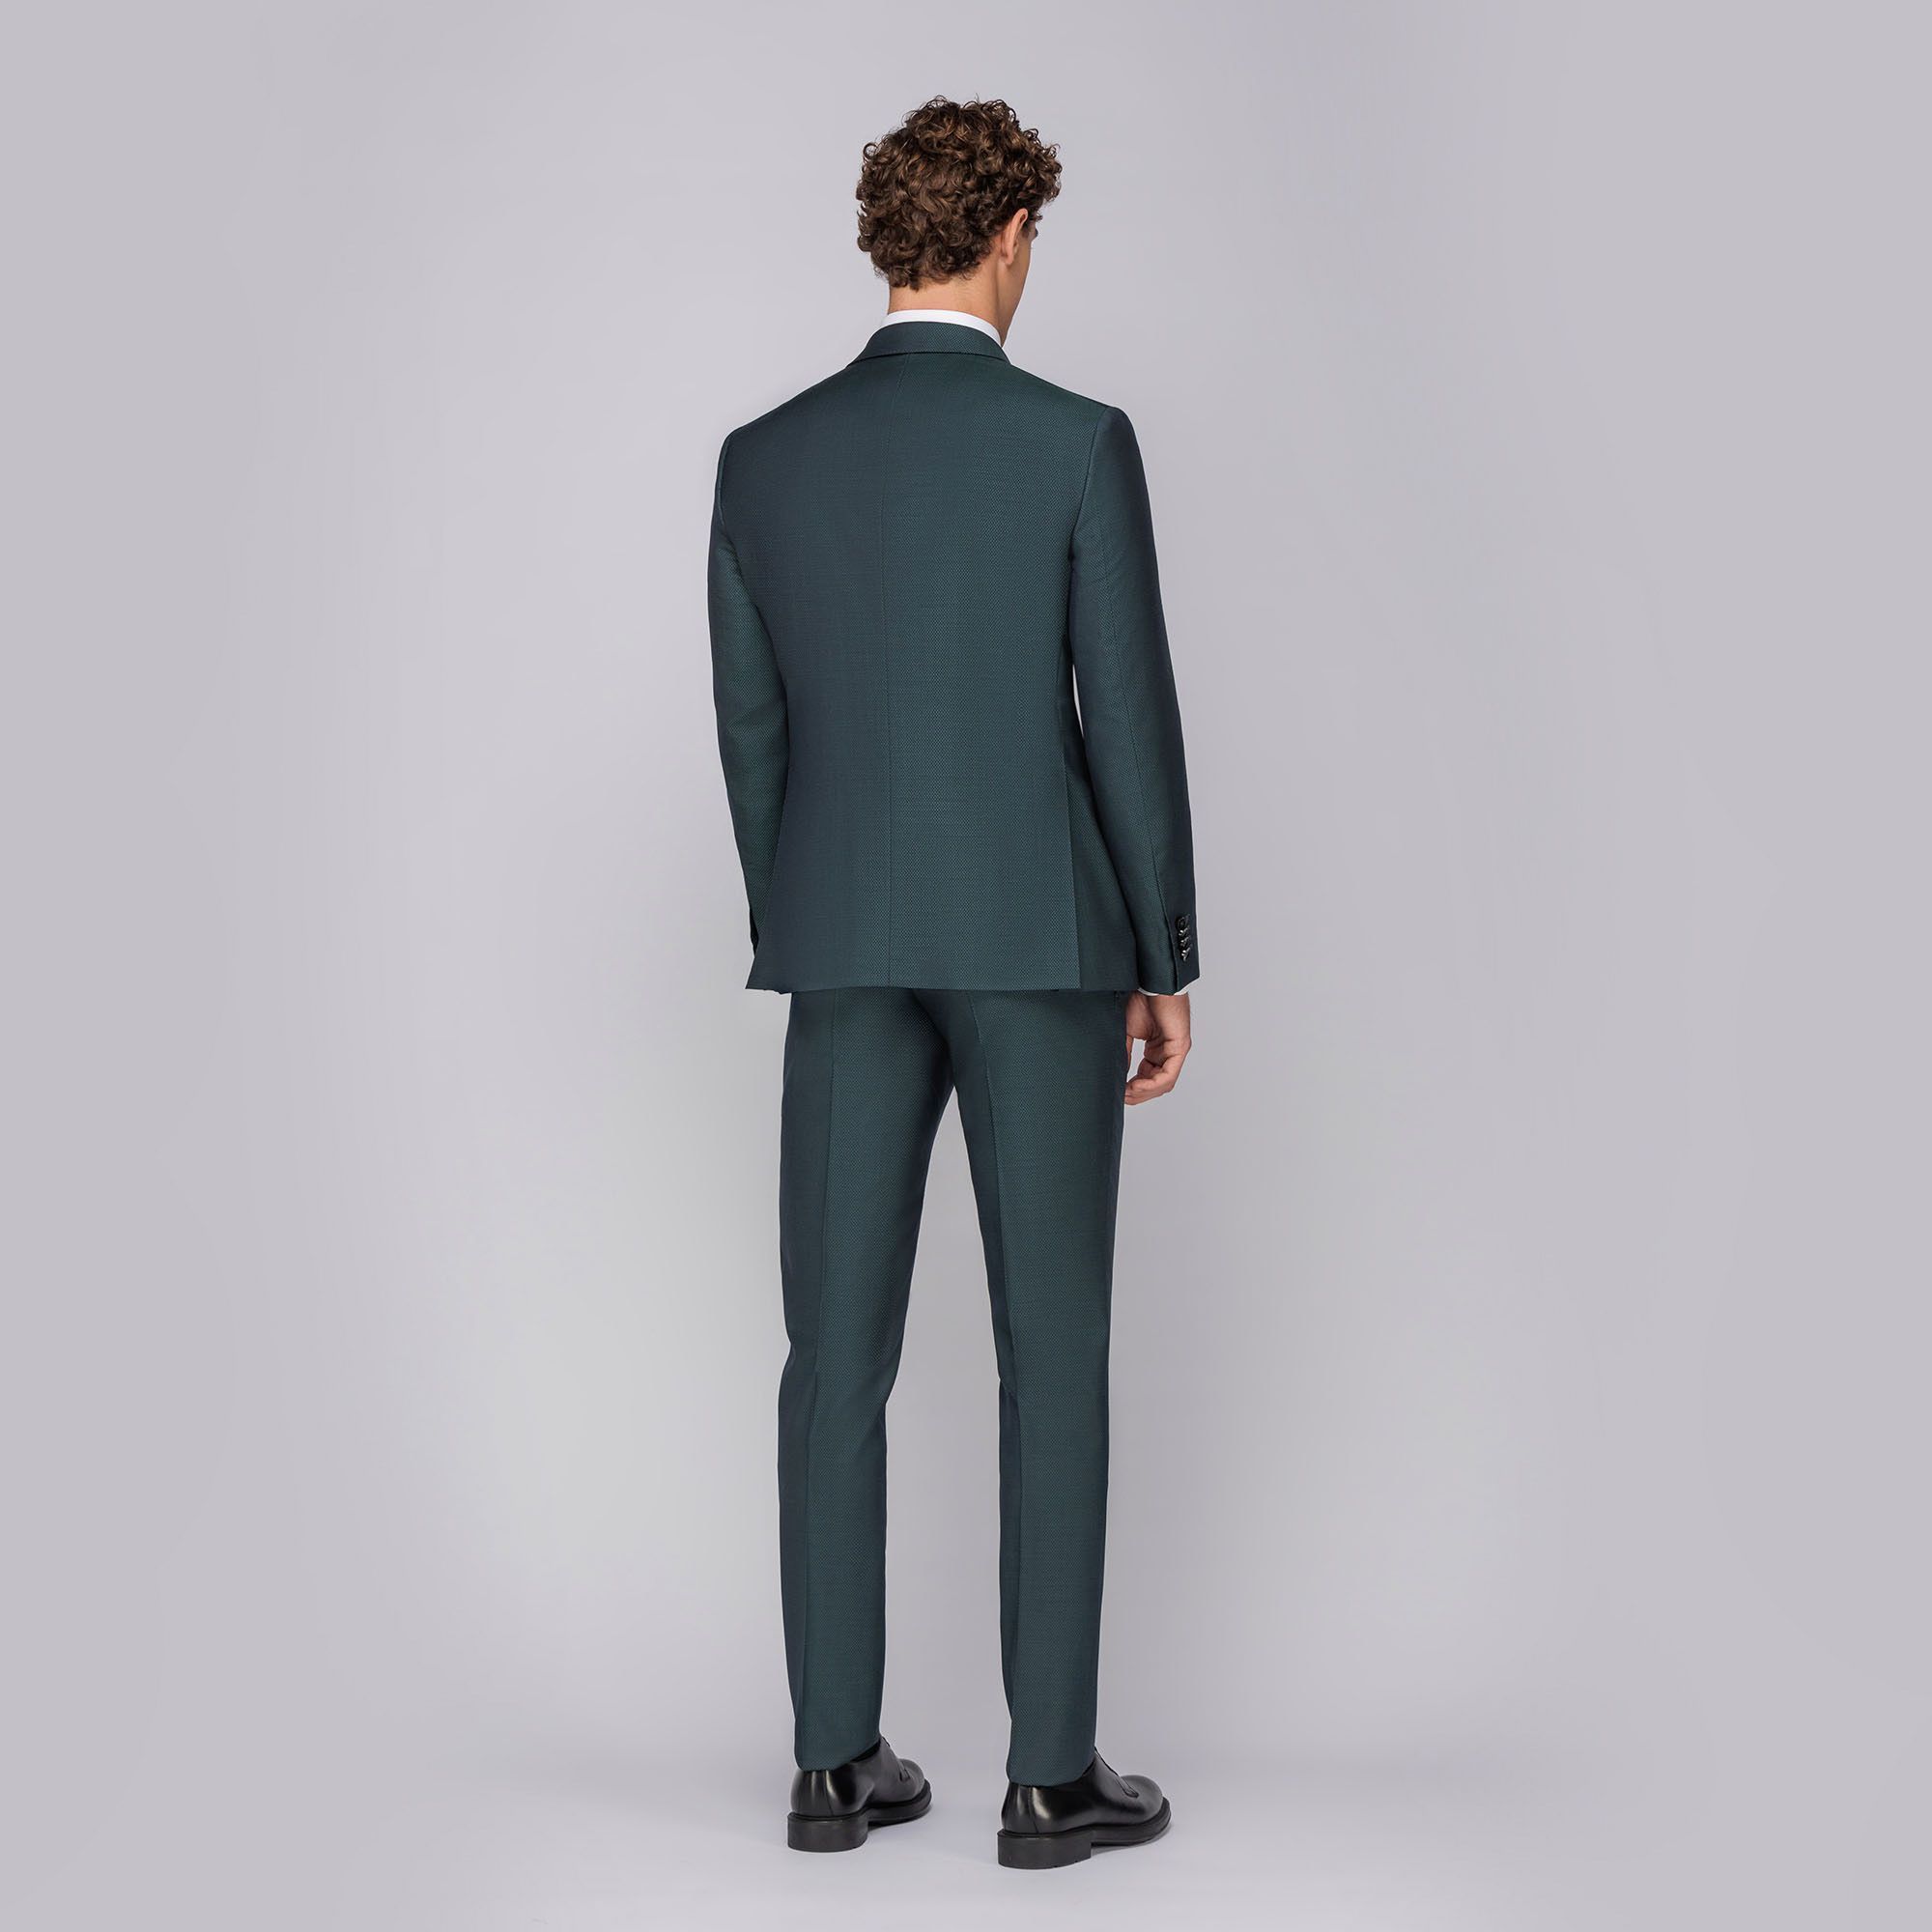 Men's 3-piece suit green